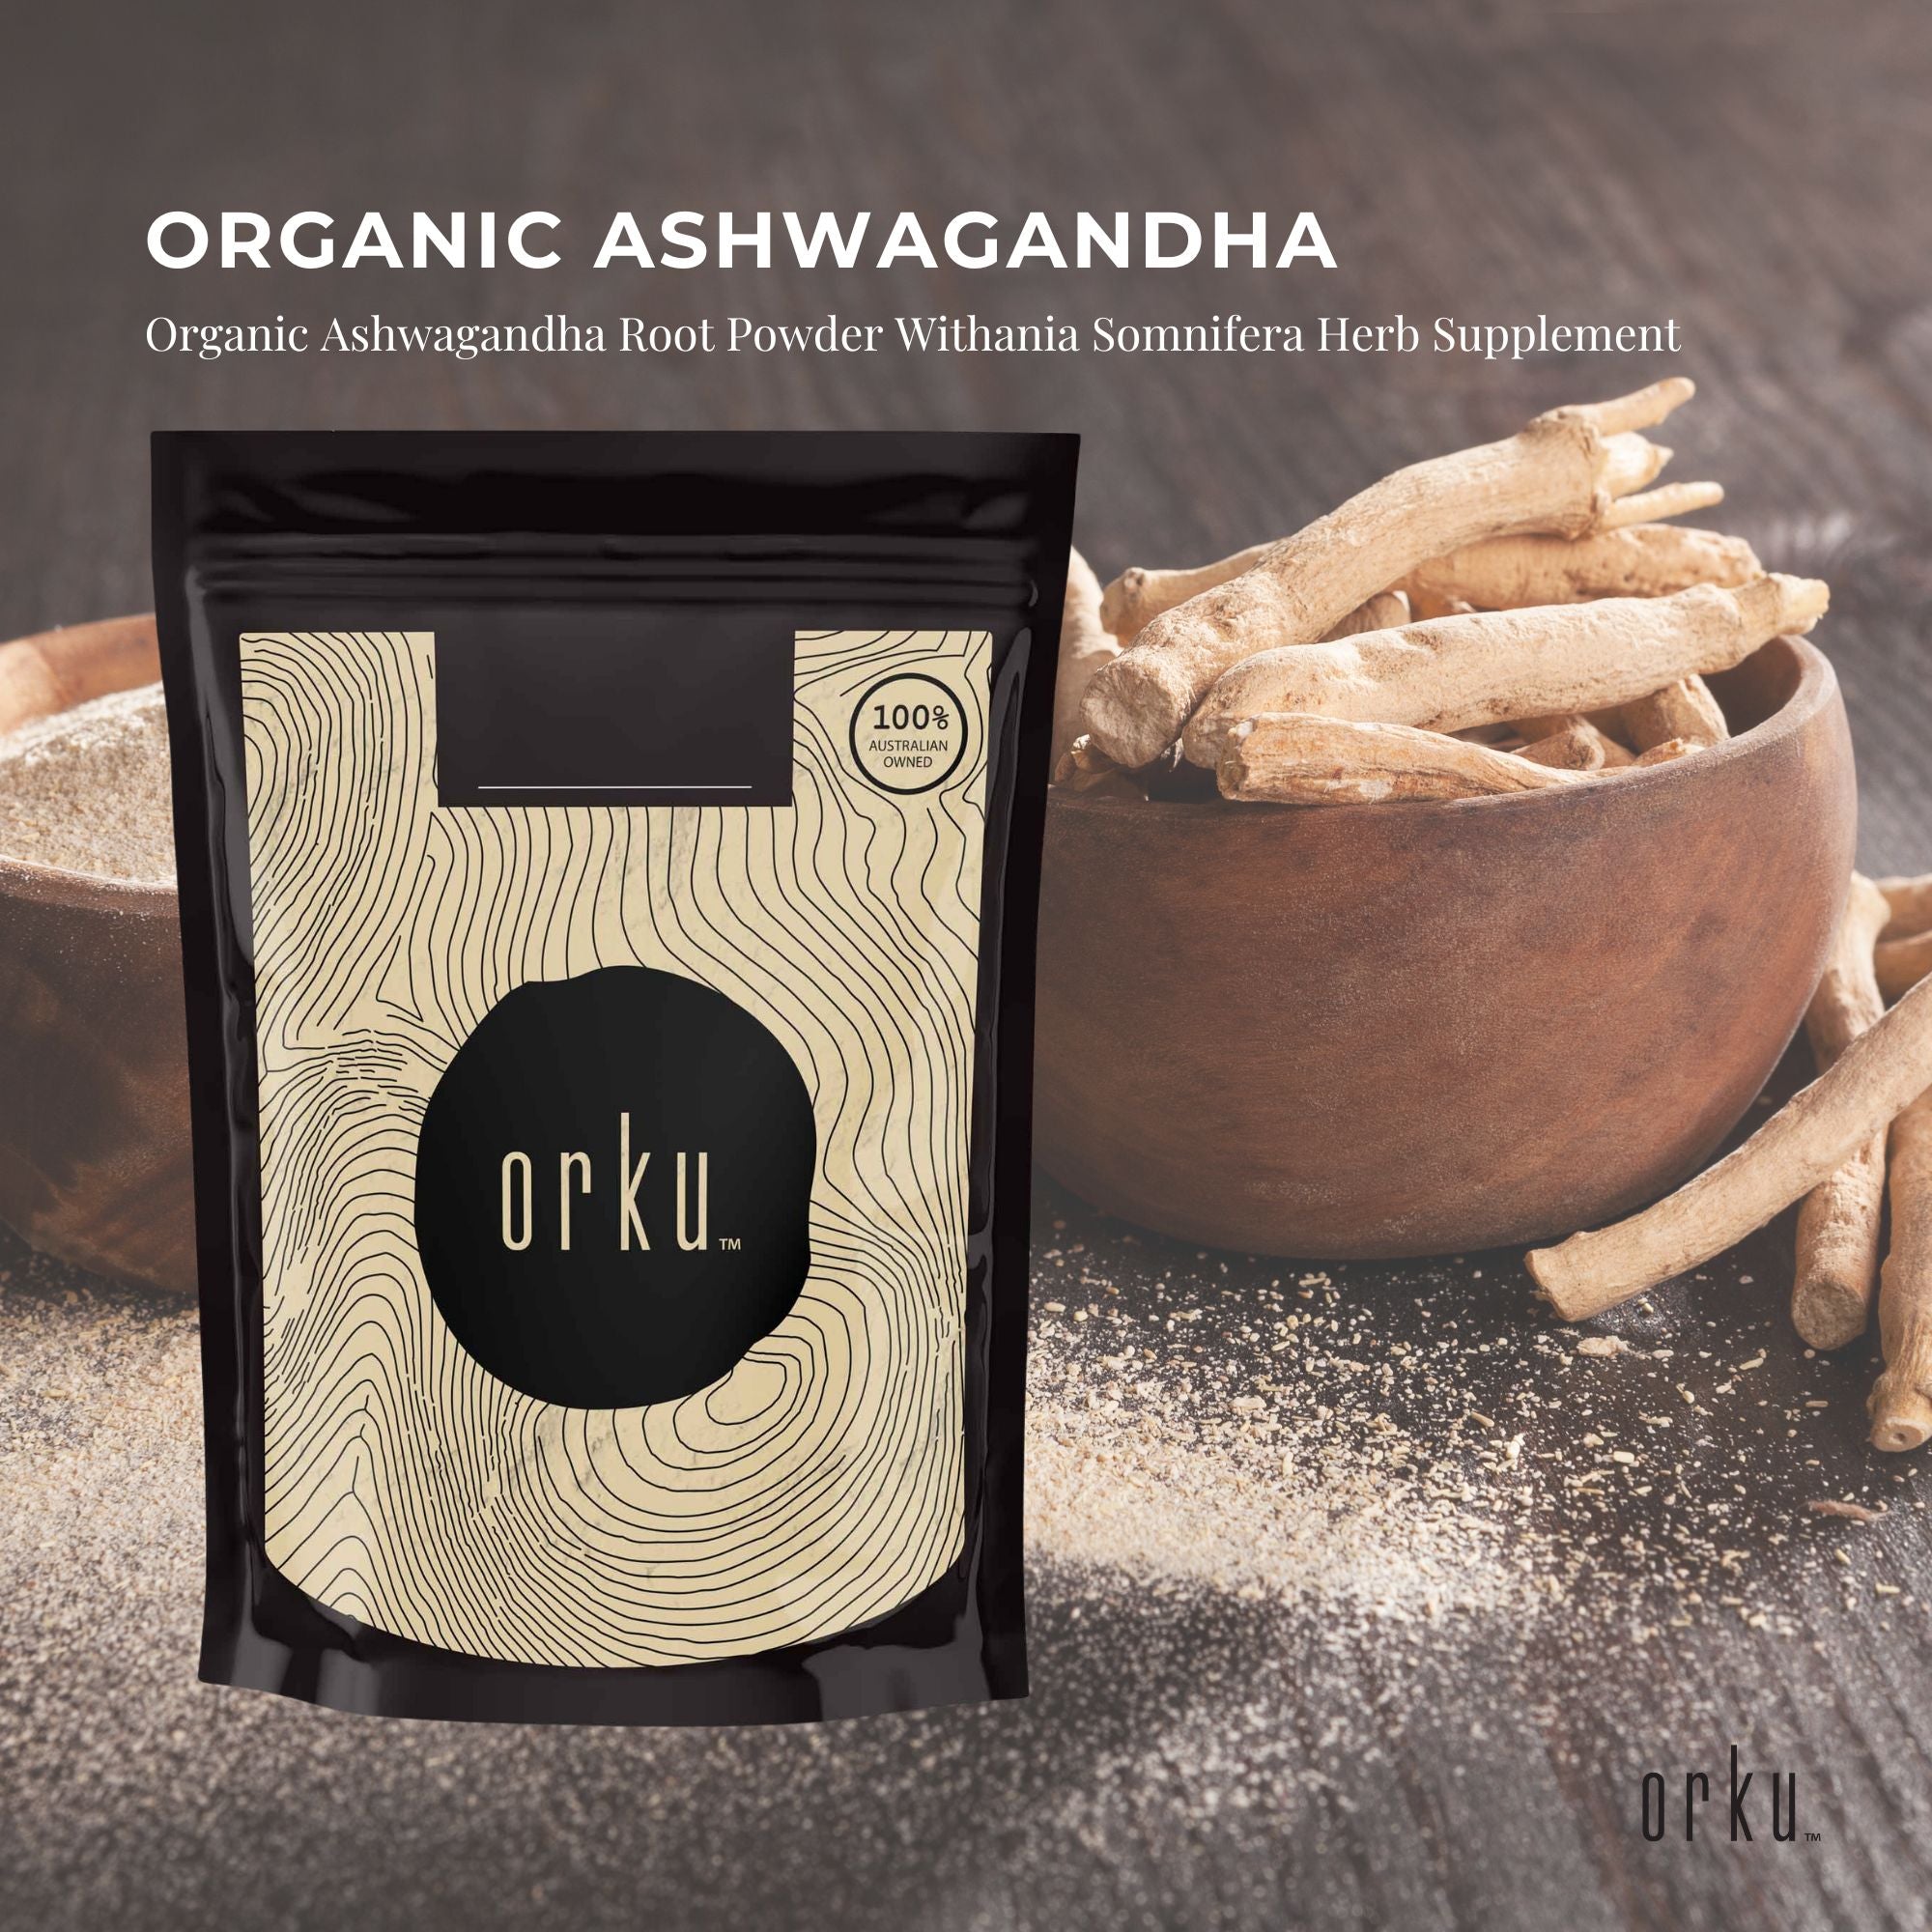 1Kg Organic Ashwagandha Root Powder Withania Somnifera Herb Supplement